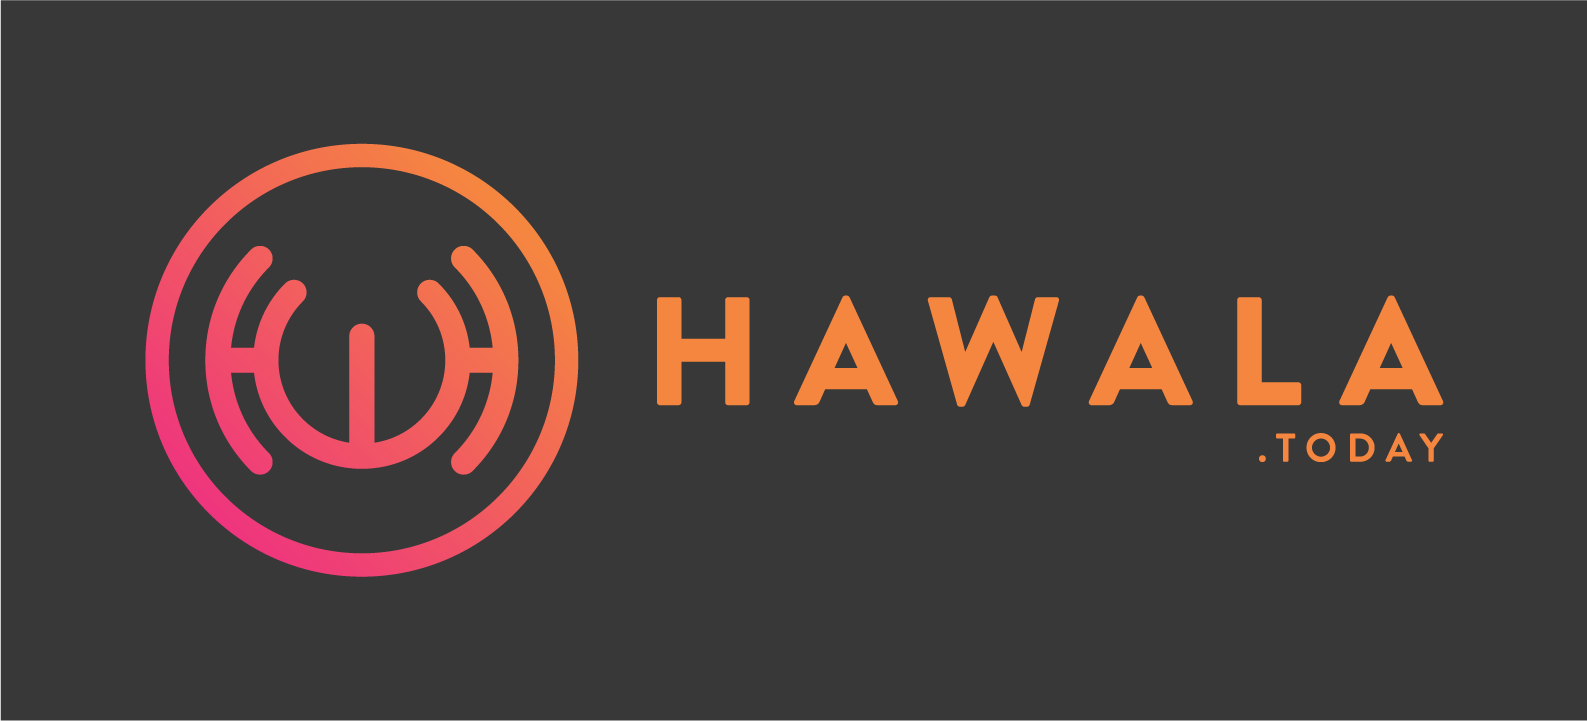 hawala today logo pic.png